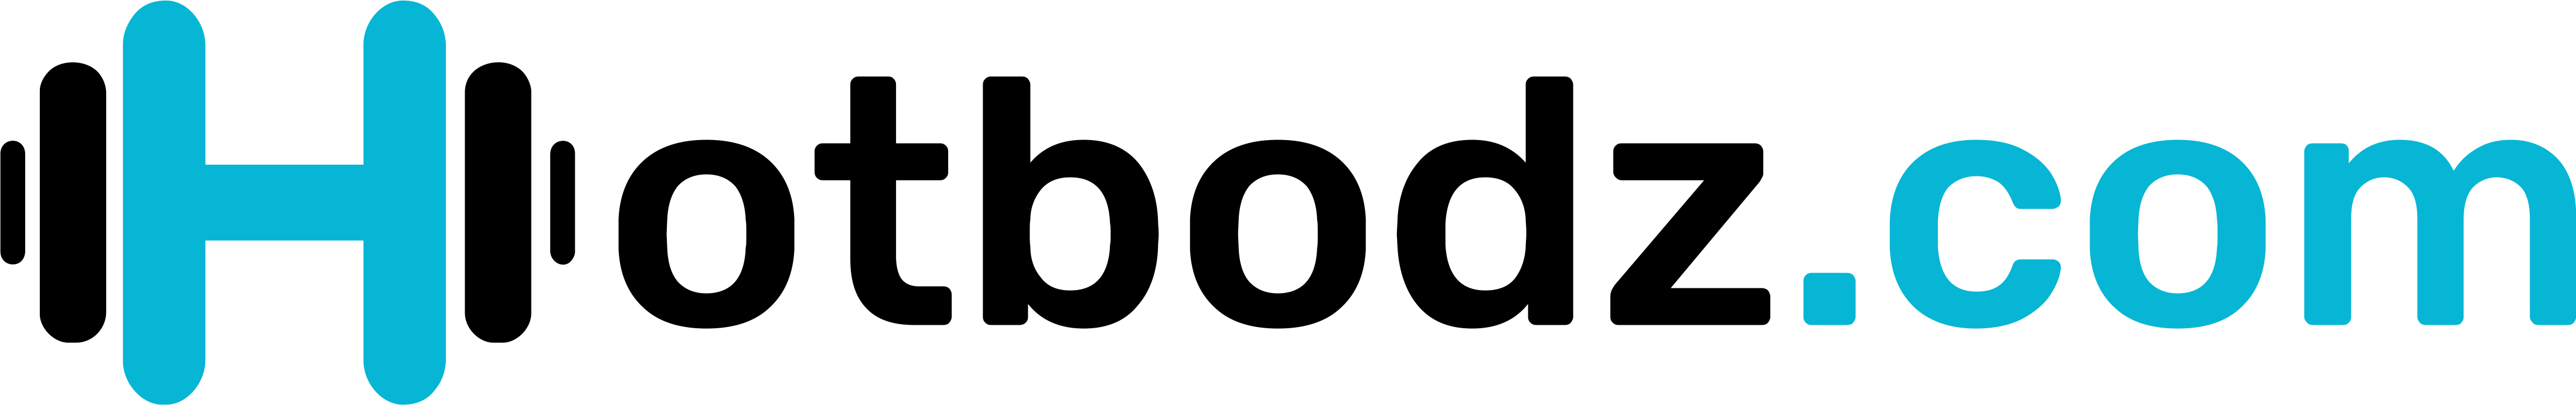 HOTBODZ Logo